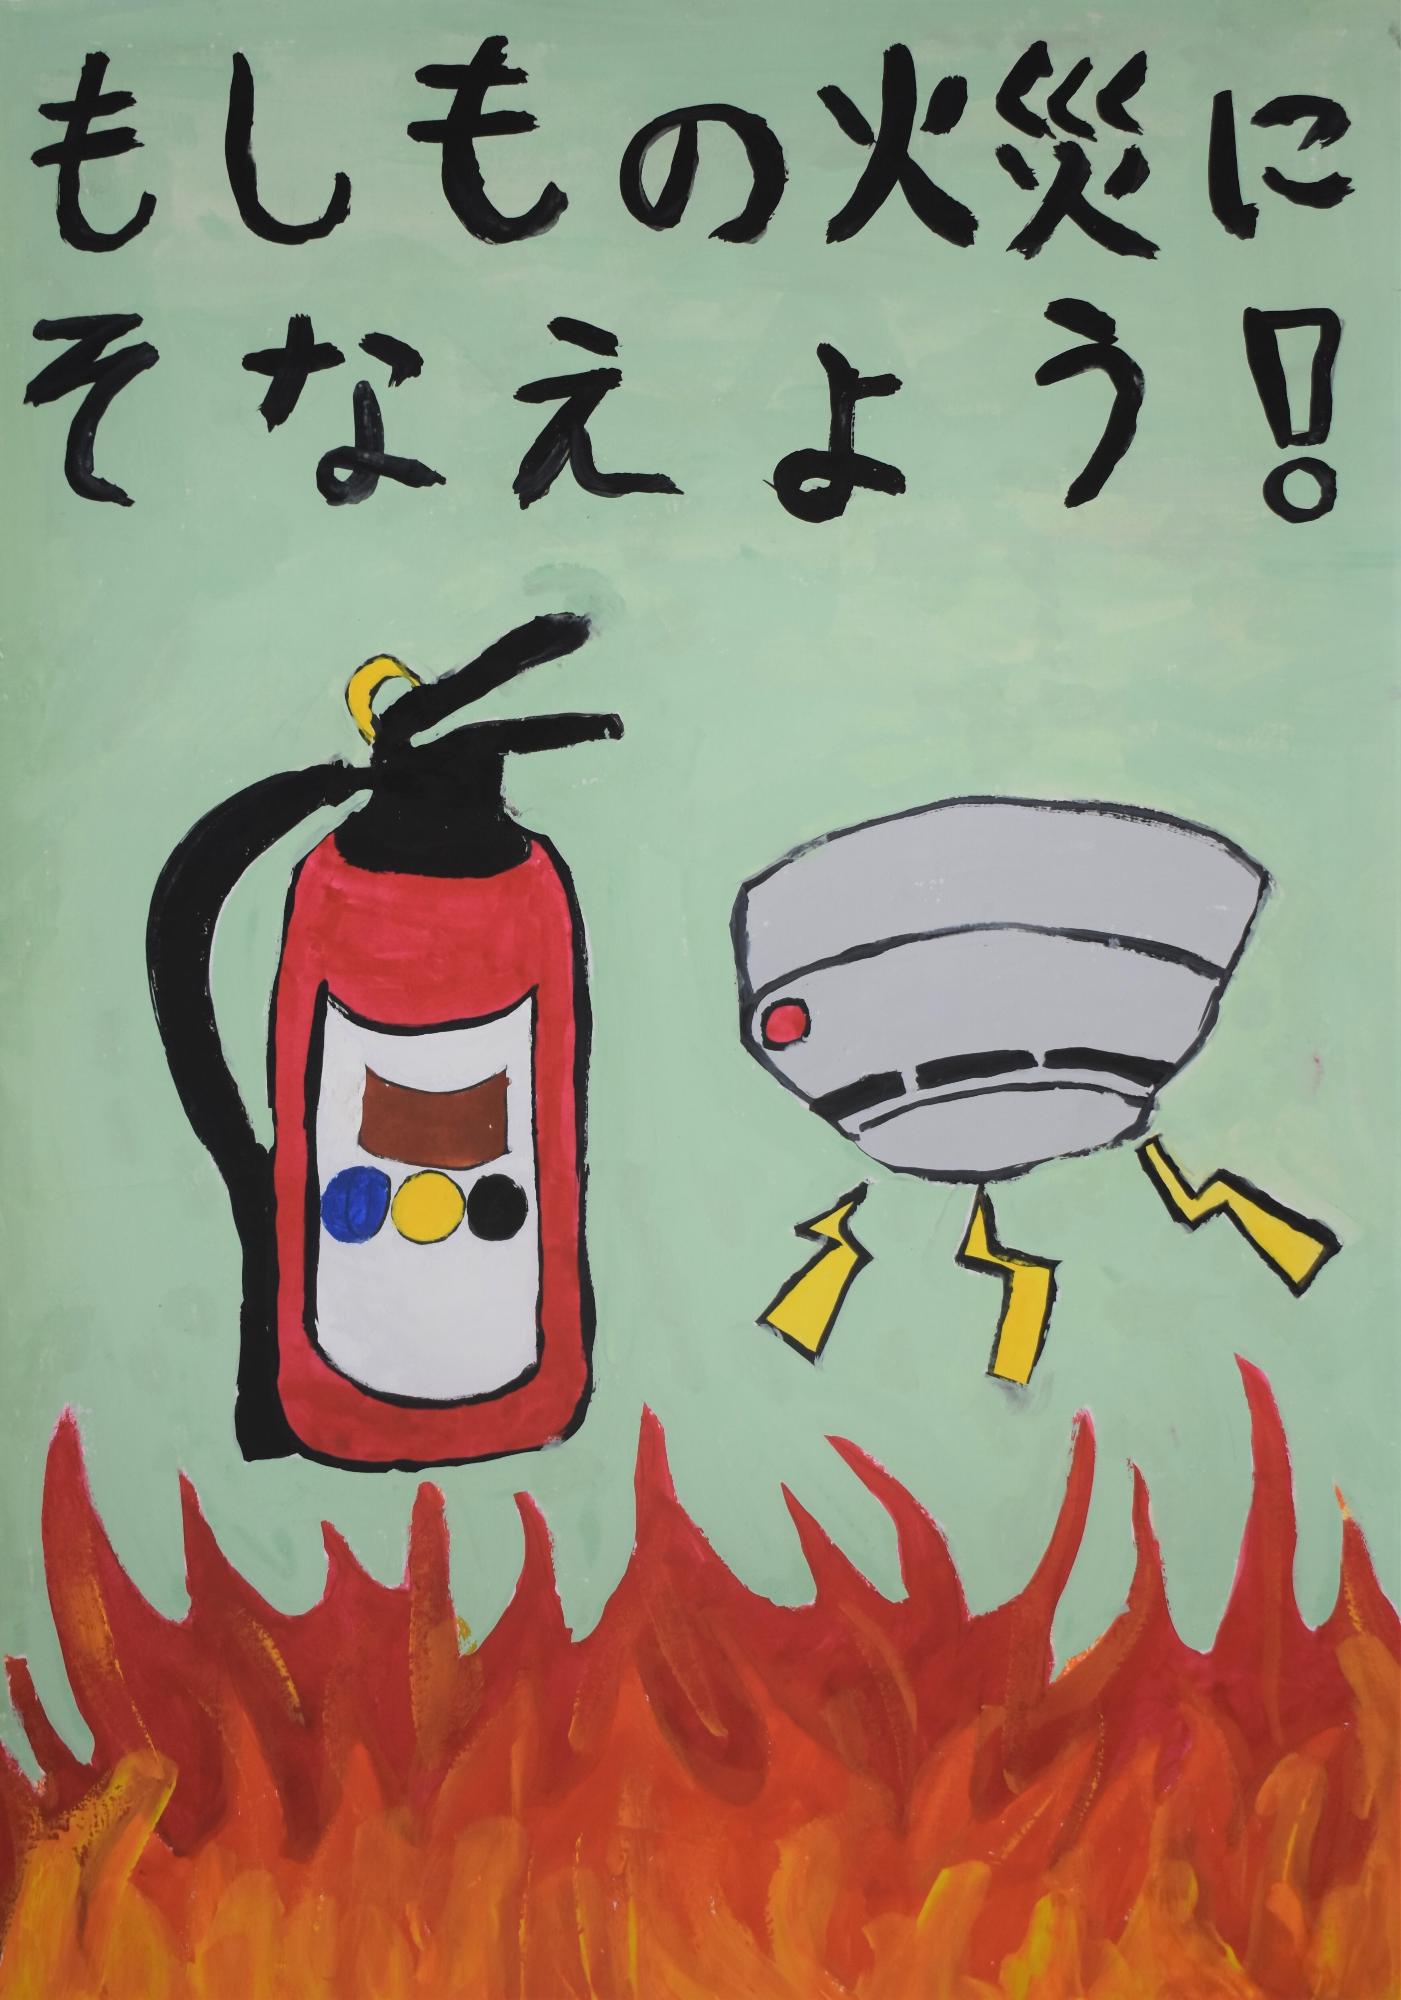 消火器と住宅用火災警報器が真ん中に描かれ、下から火が上がっている様子のポスター